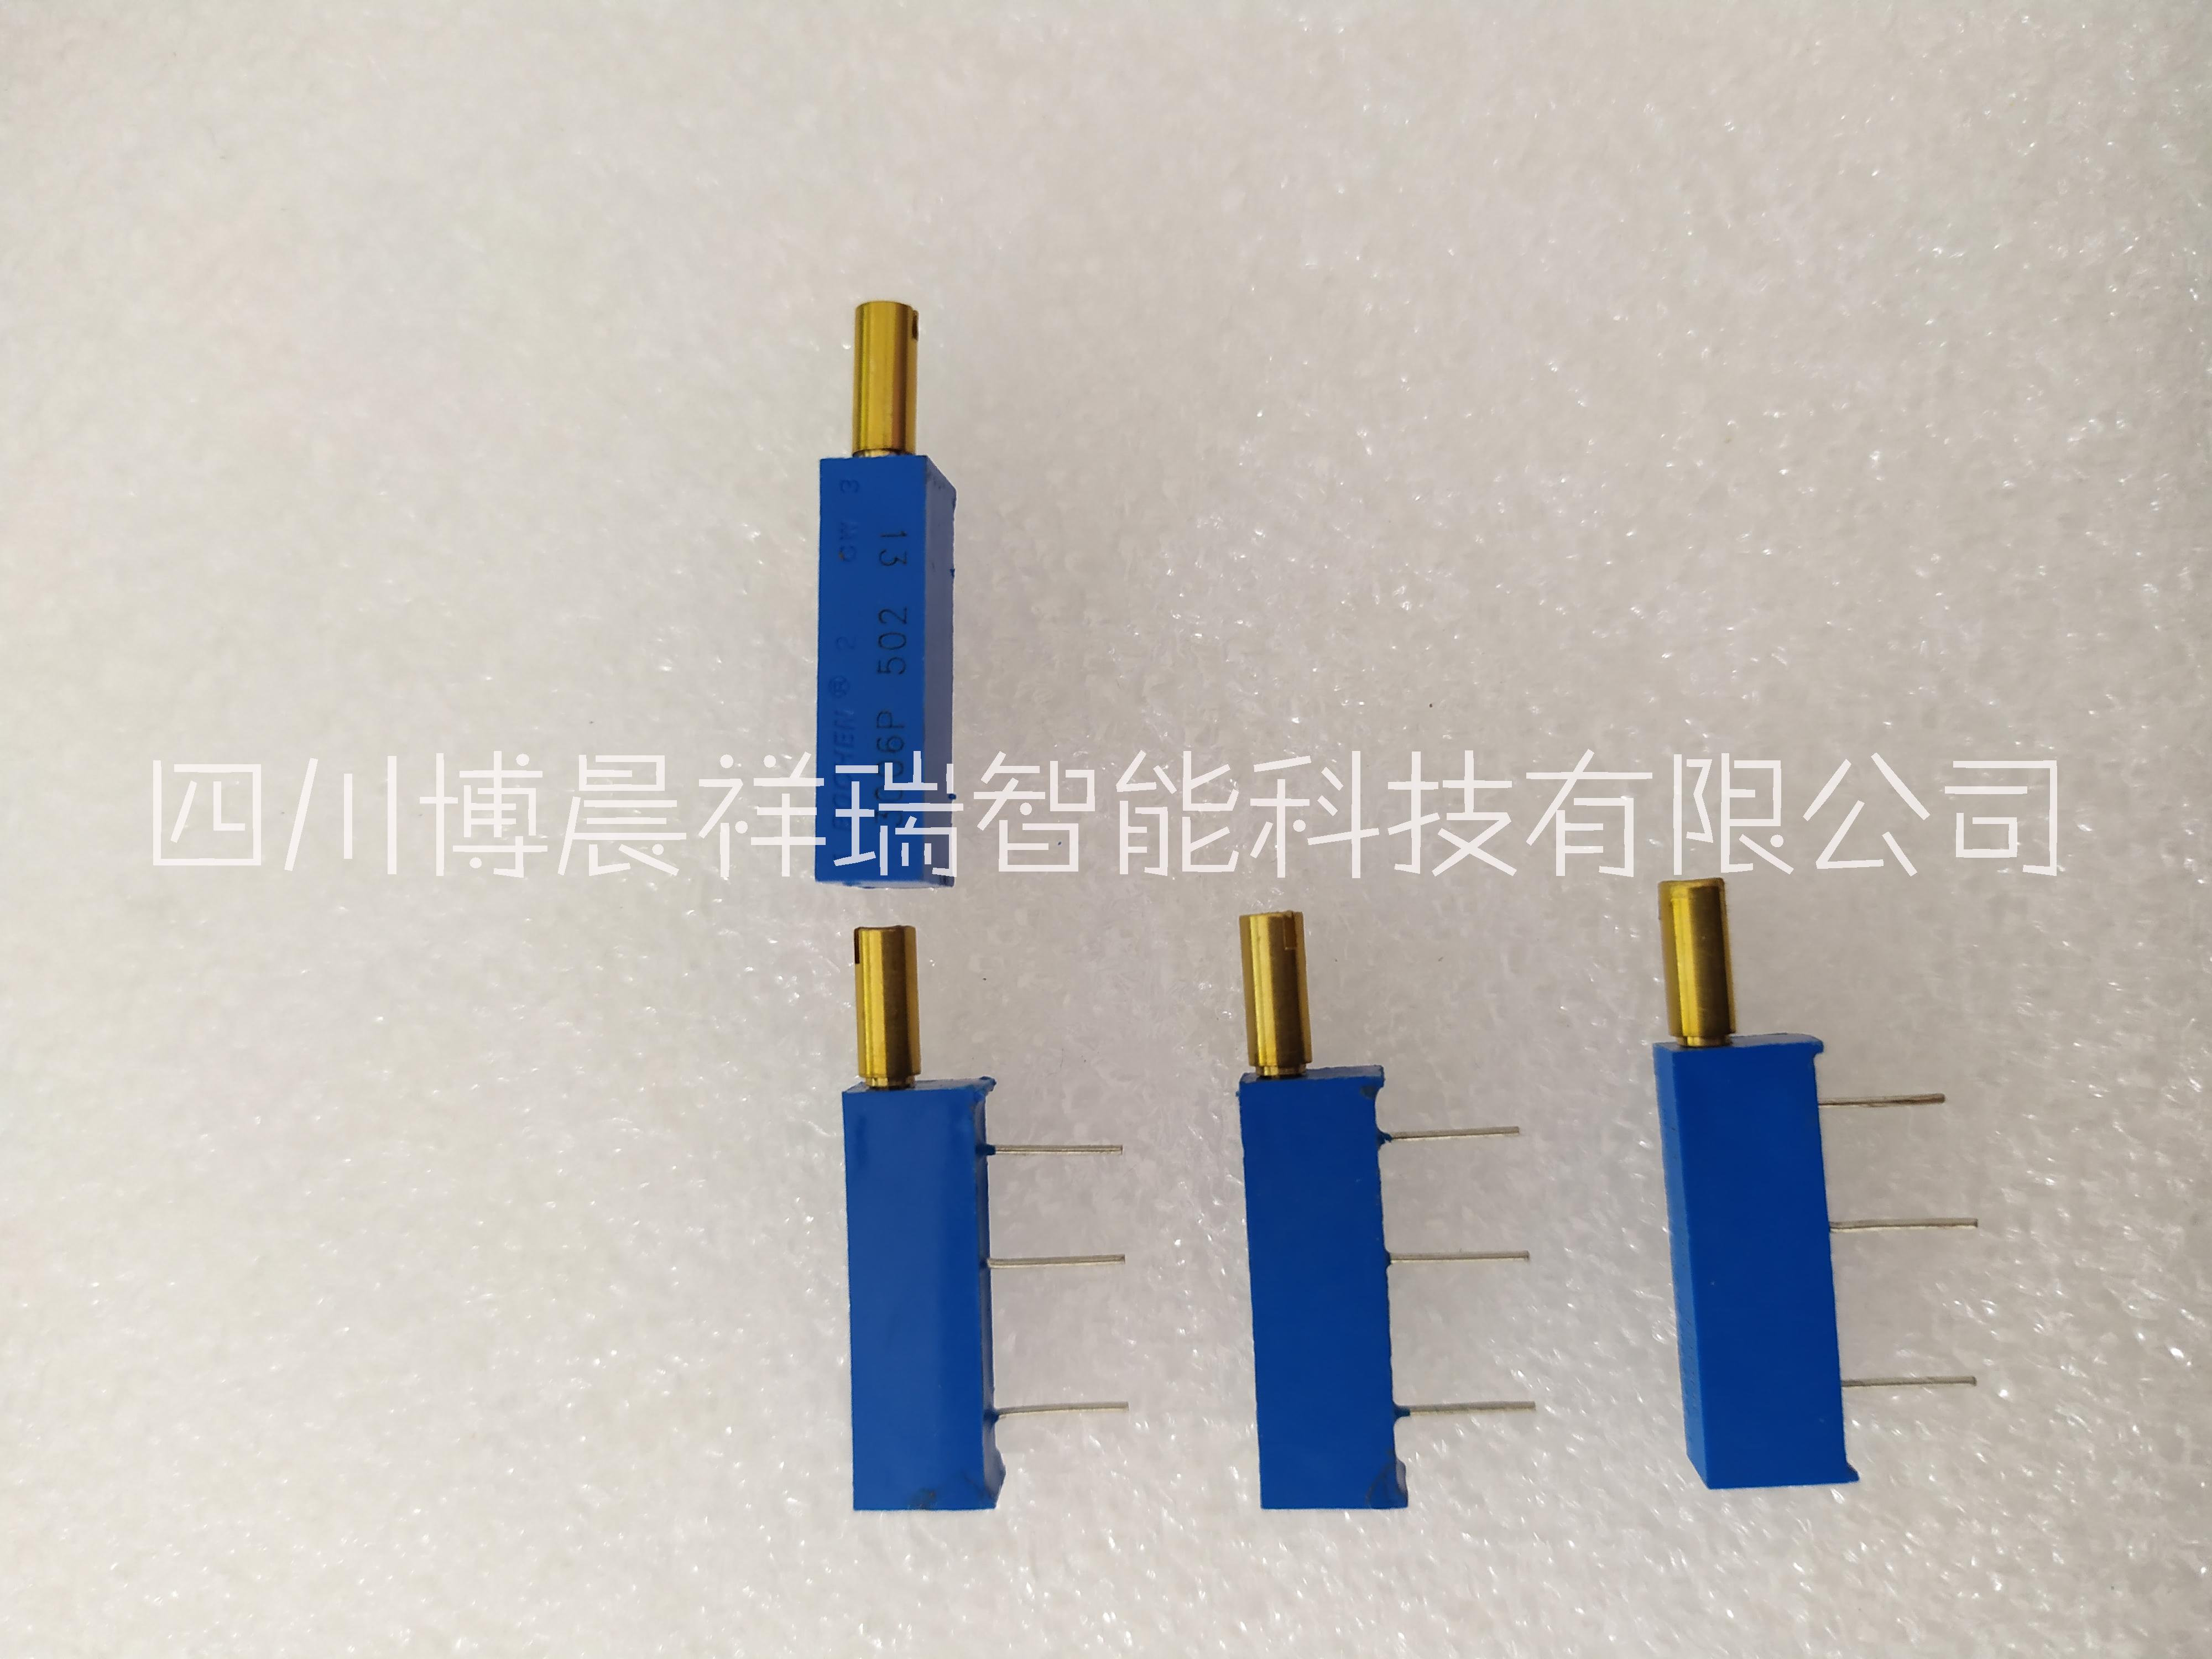 测调3006P型多圈玻璃釉电位器 代码13 蓝玻璃釉 直插式电位器 BOCHEN电位器供应商